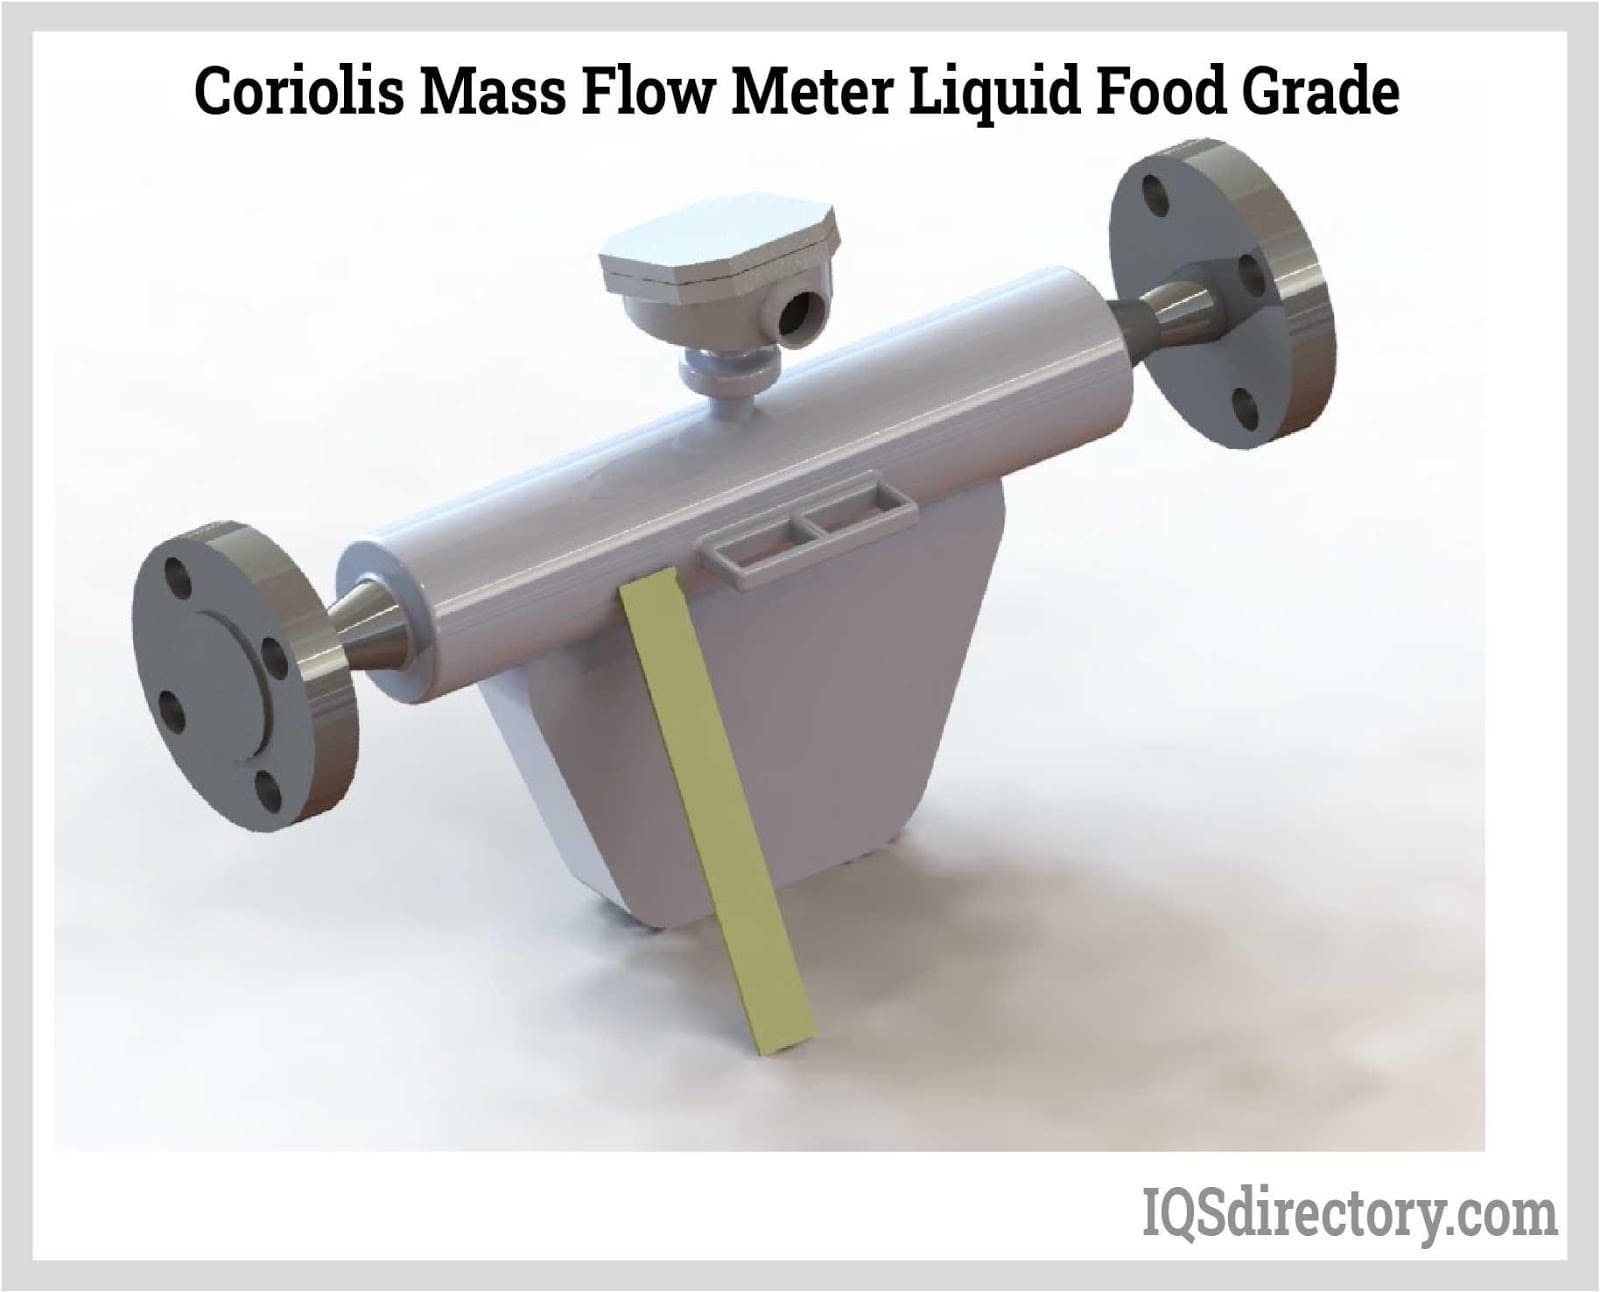 Coriolis Mass Flow Meter Liquid Food Grade